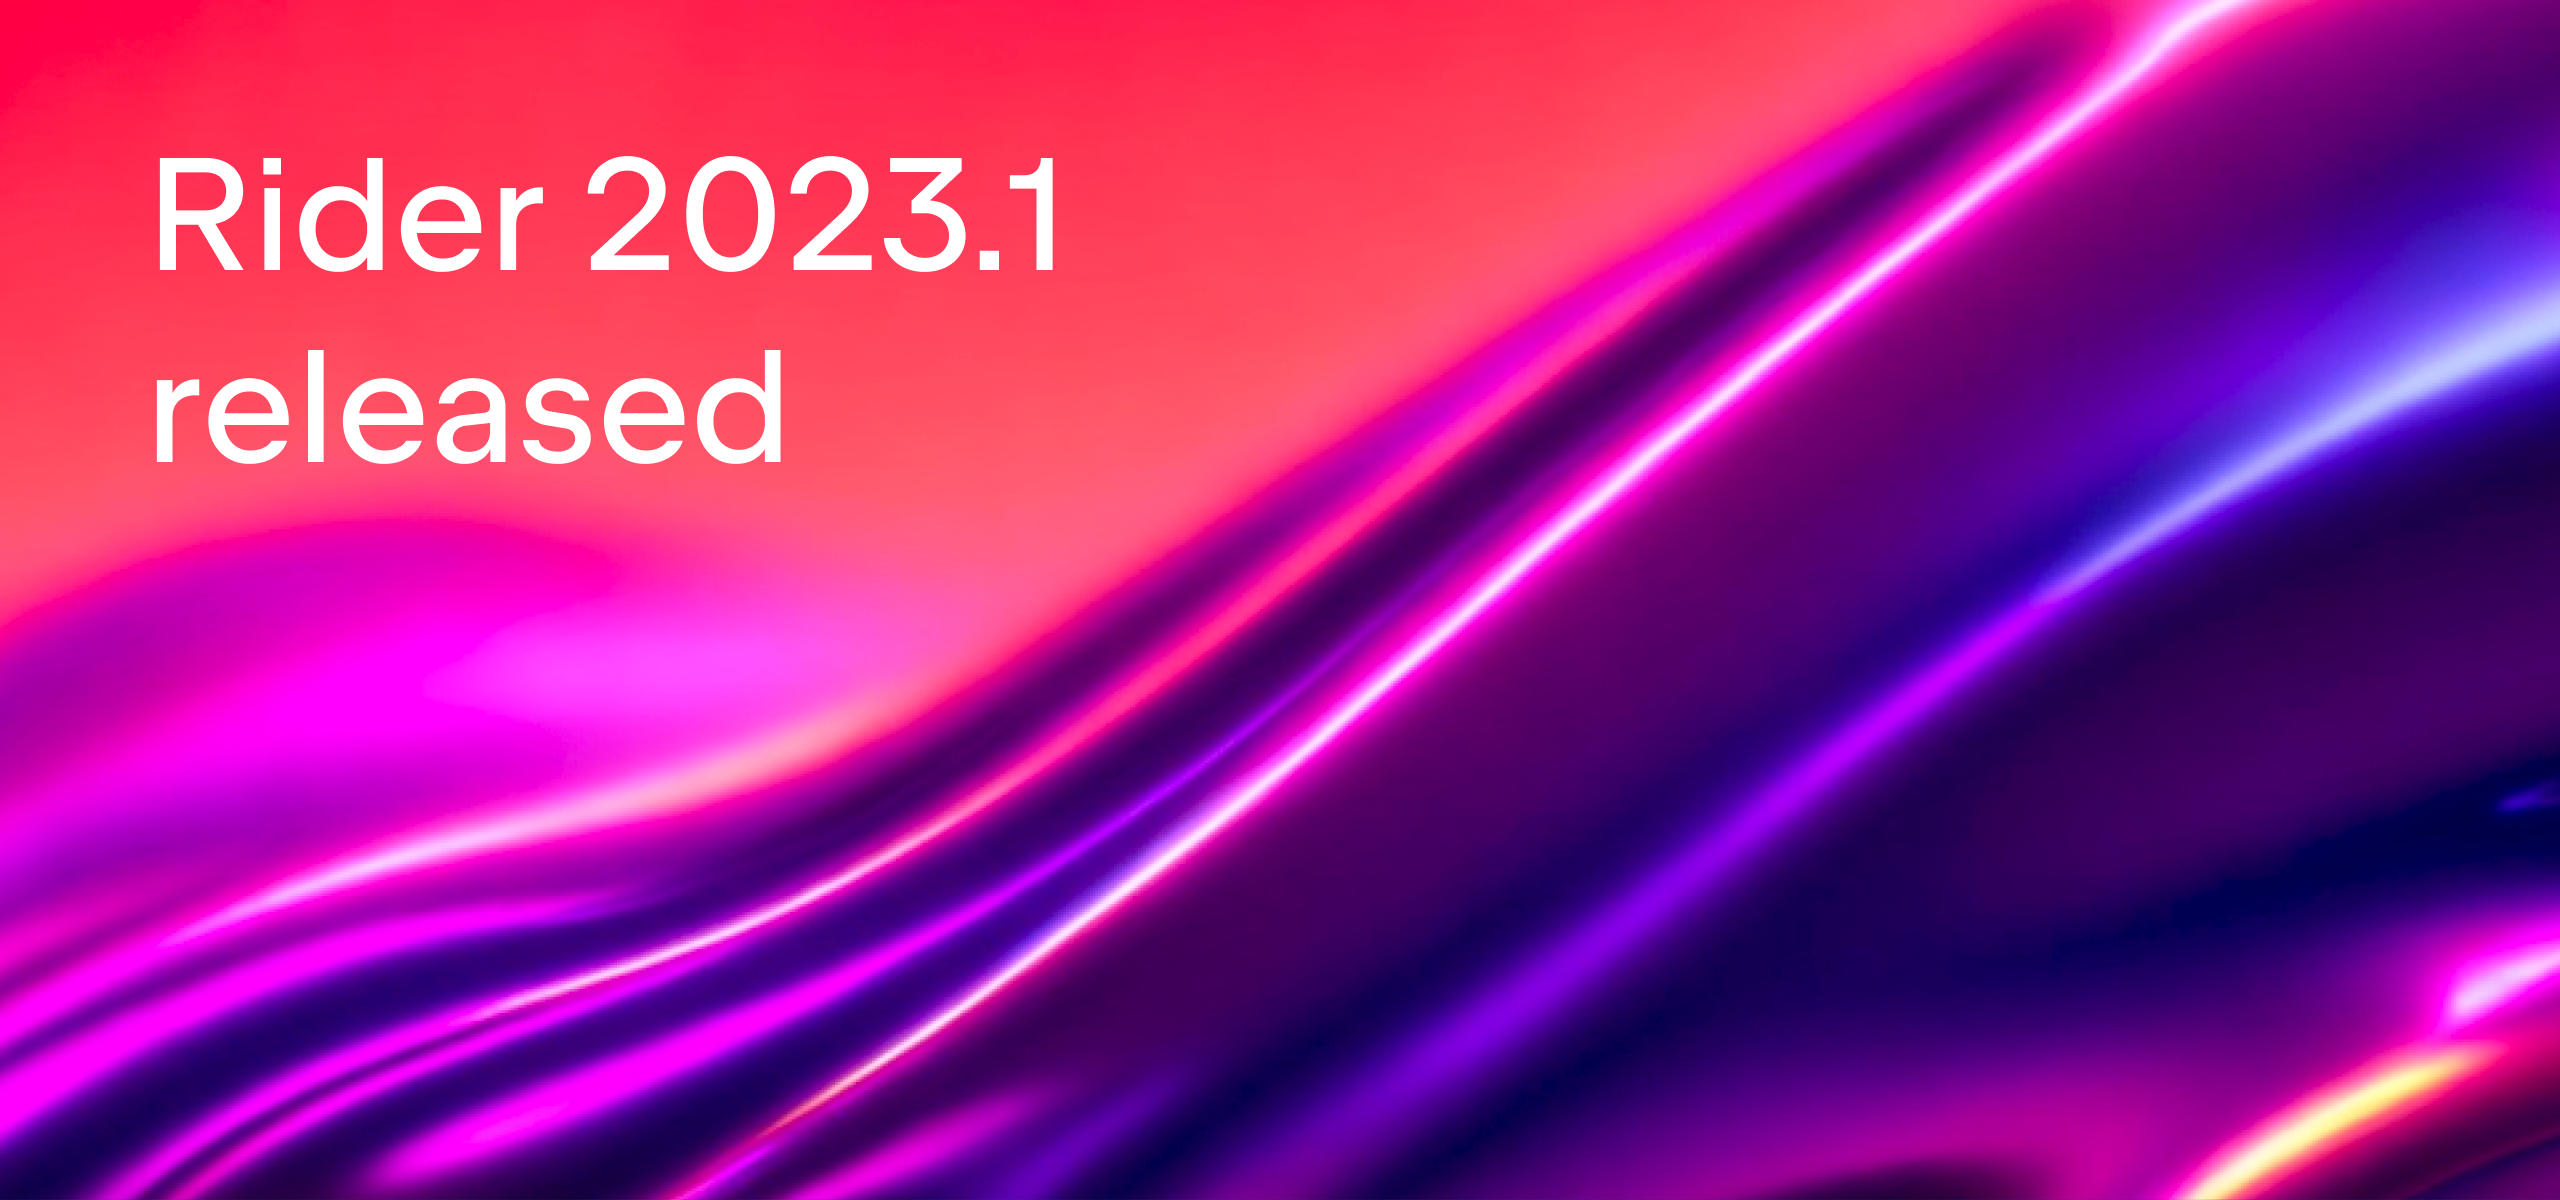 简单易用的Mac跨平台.NET开发工具：JetBrains Rider 2023，永久版下载